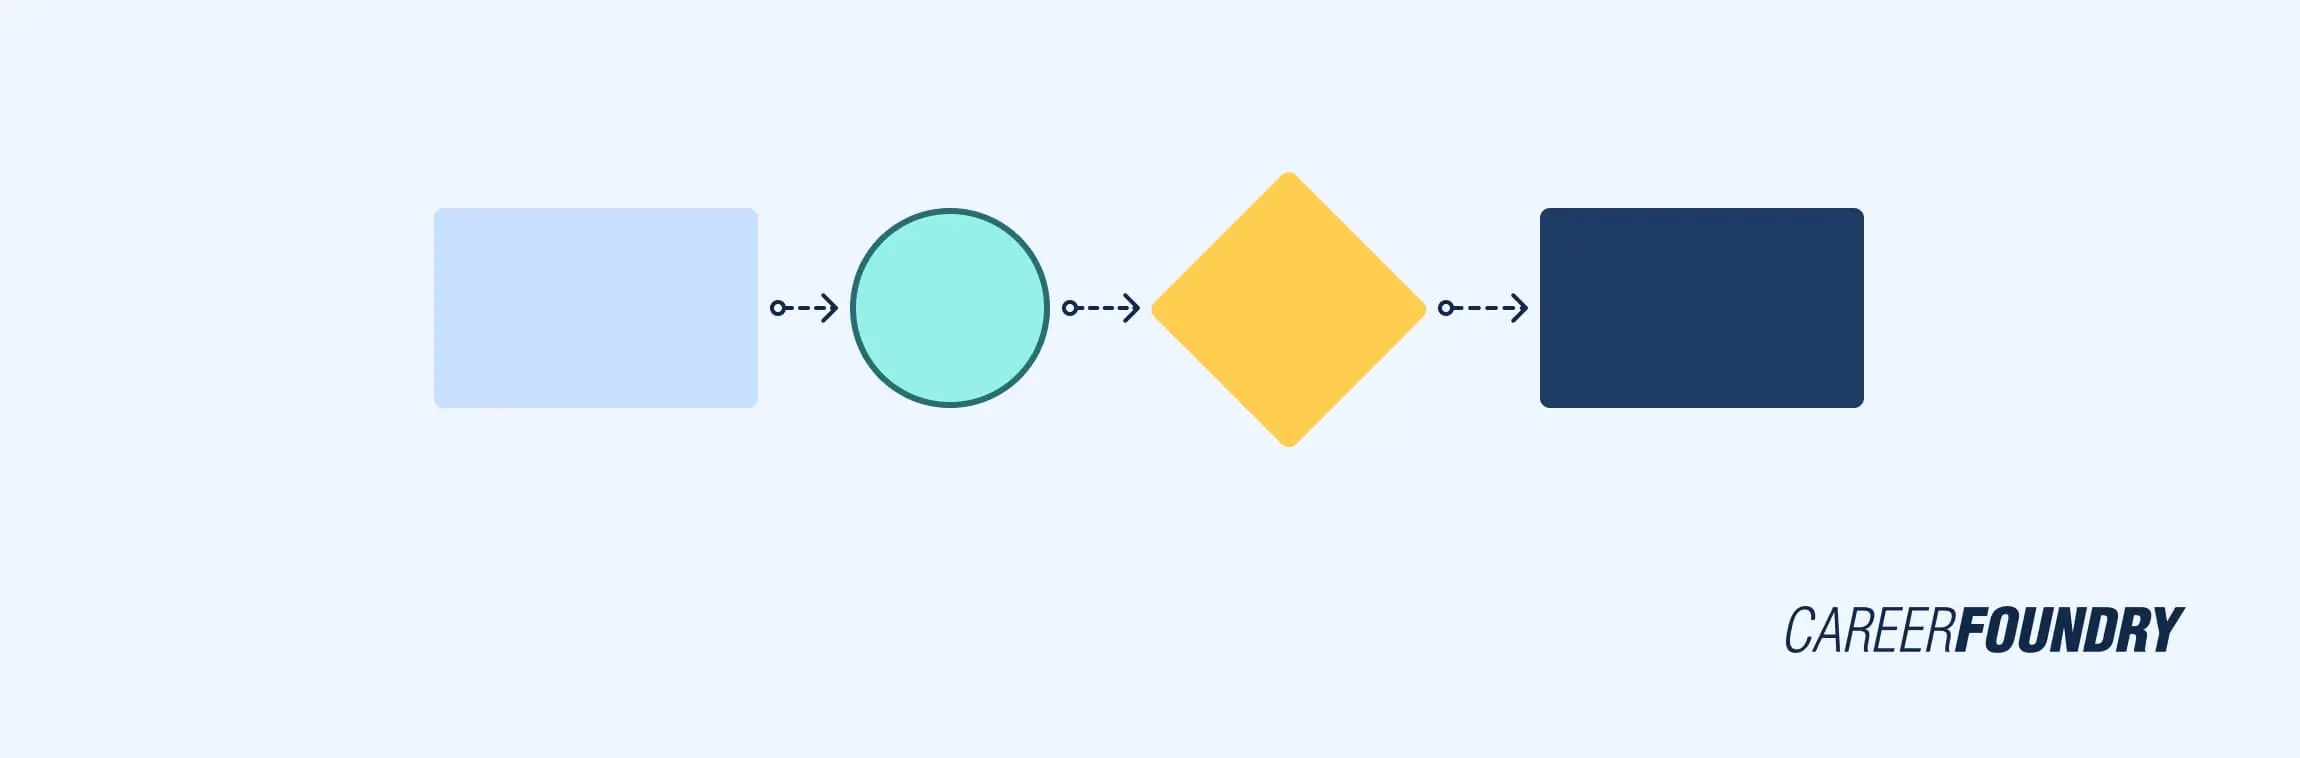 illustration of user flow 